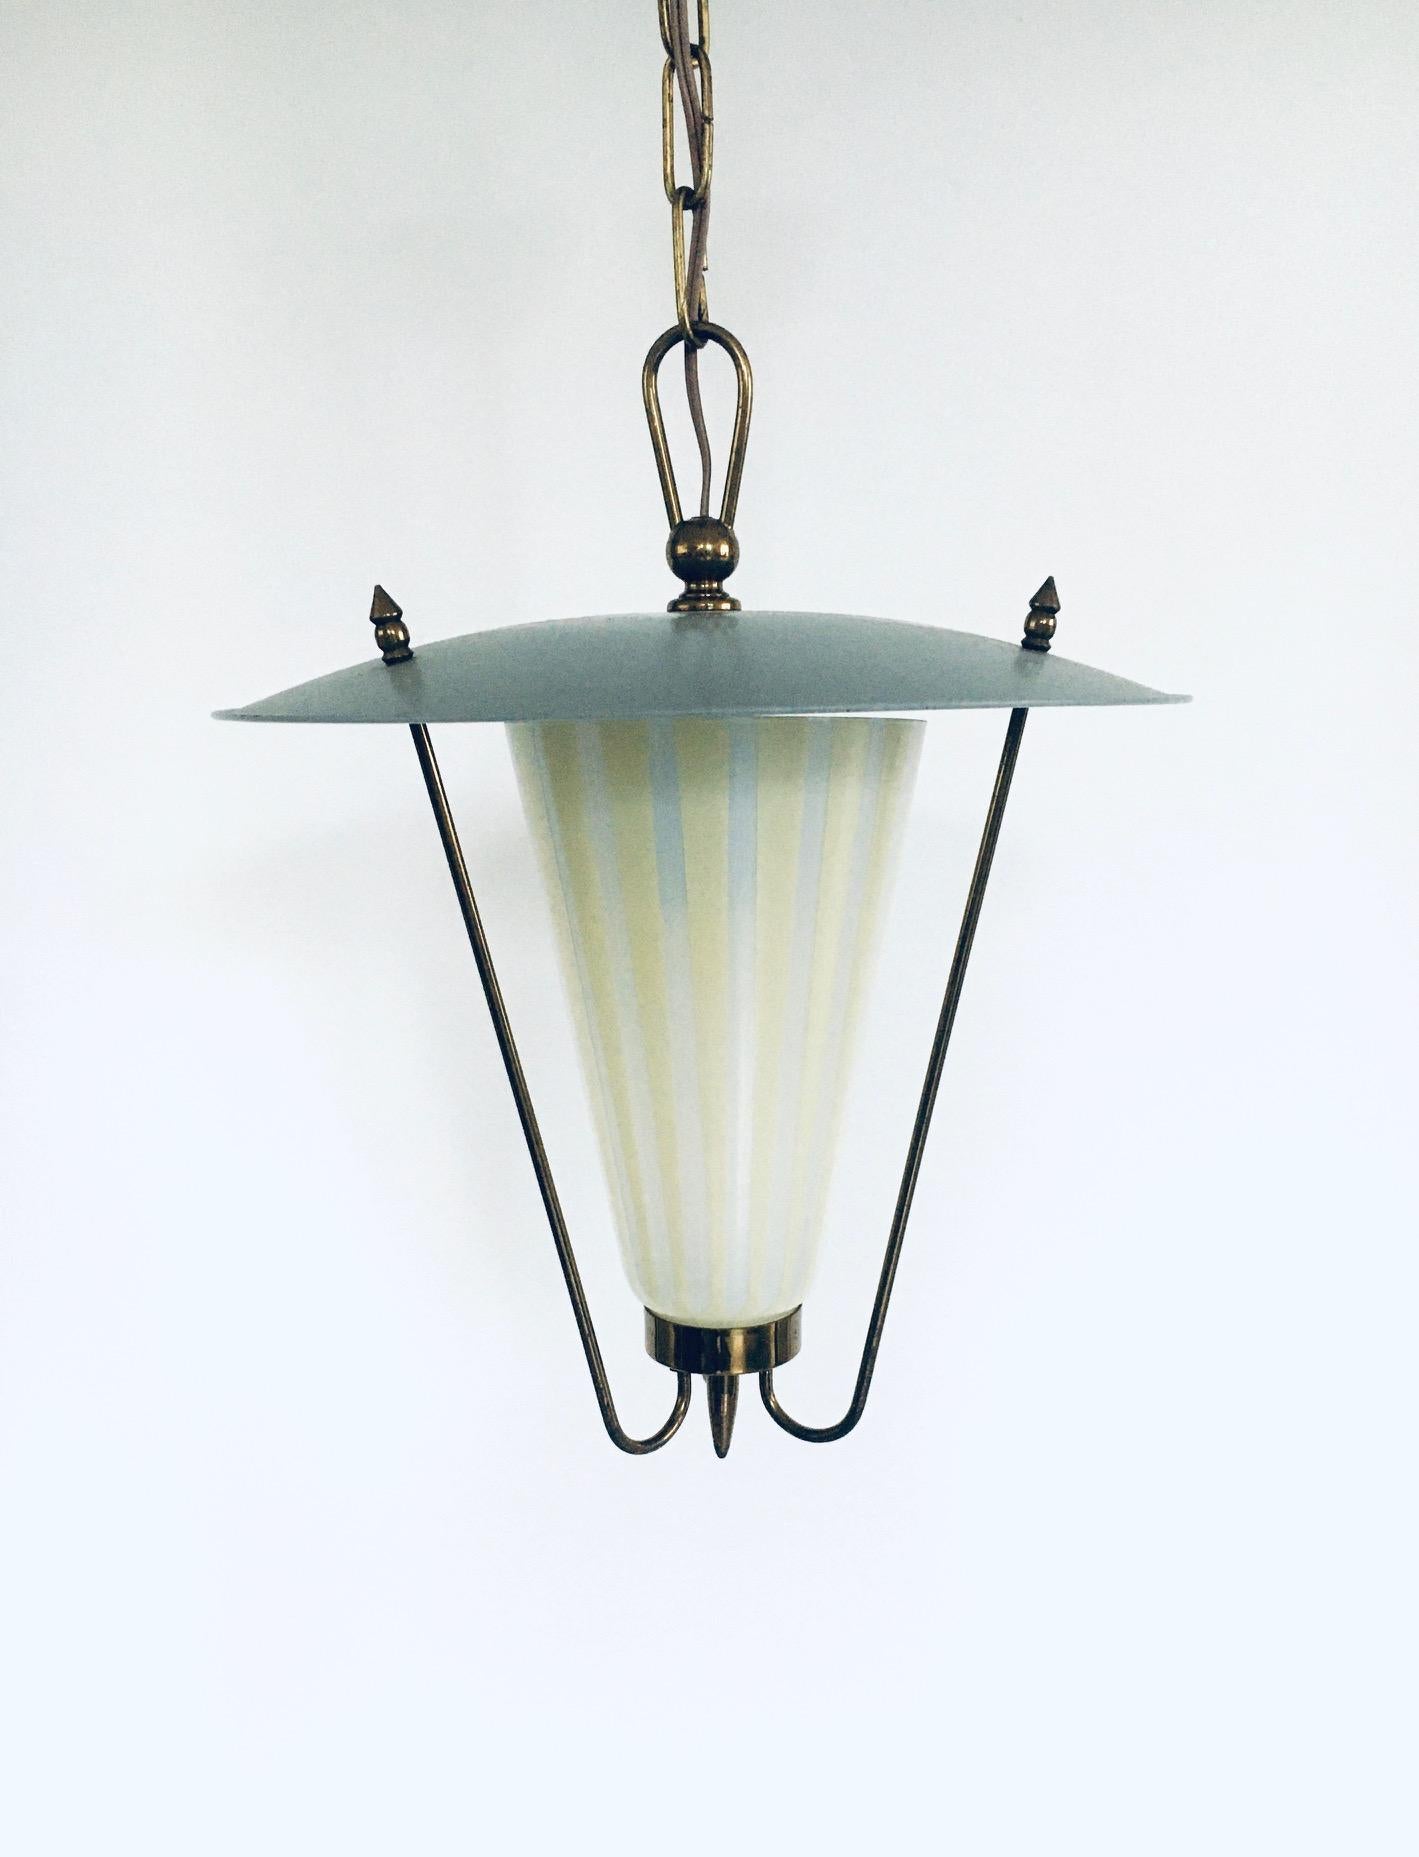 1950's Atomic Age Design Pendant Lantern Lamp 4